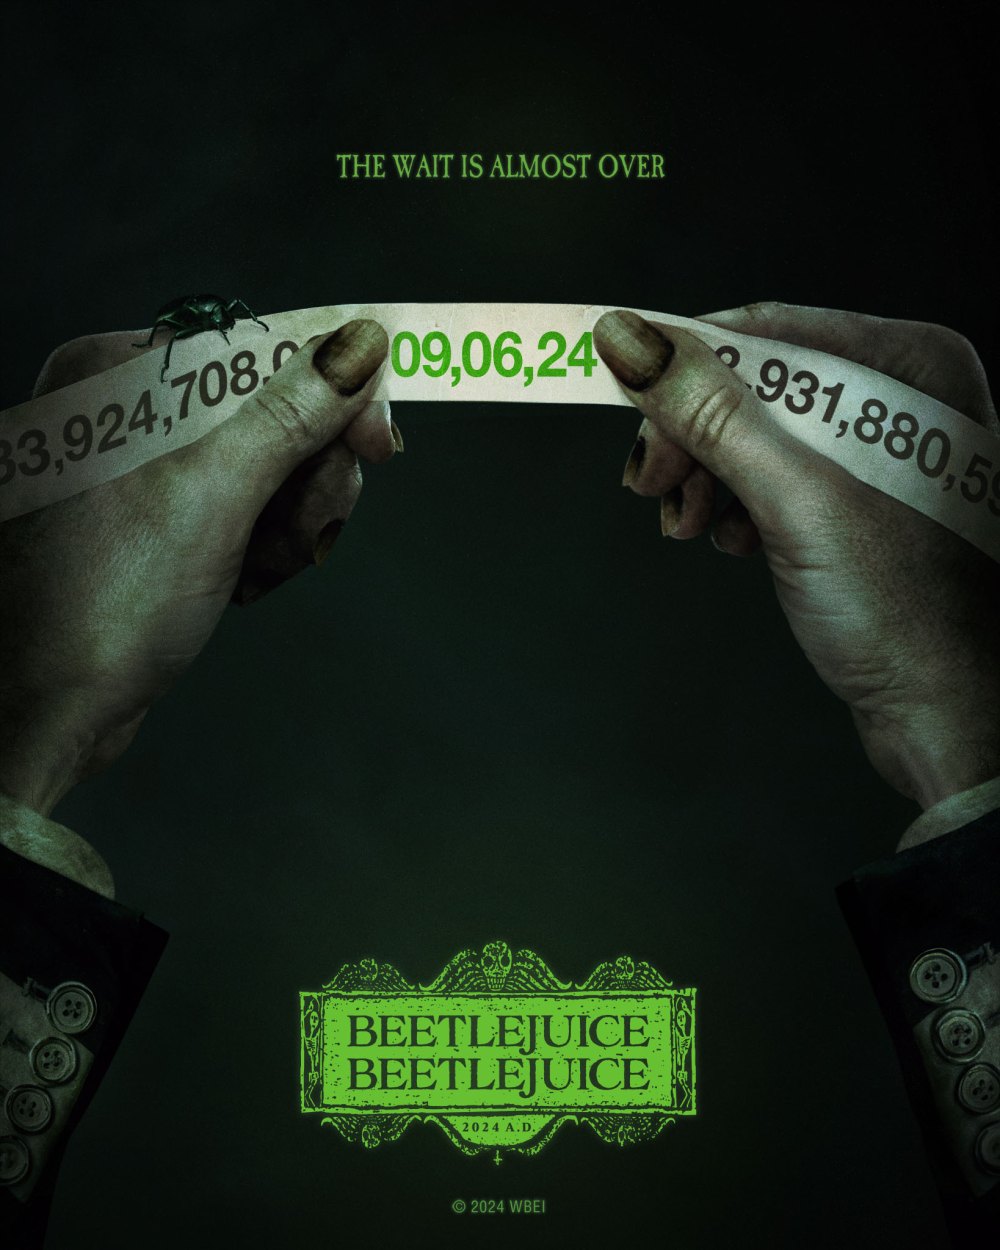 La nouvelle affiche de Beetlejuice 2 révèle le titre officiel du filmhttps://twitter.com/wbpictures/status/1753101347925504256?ref_src=twsrc%5Egoogle%7Ctwcamp%5Eserp%7Ctwgr%5Etweet